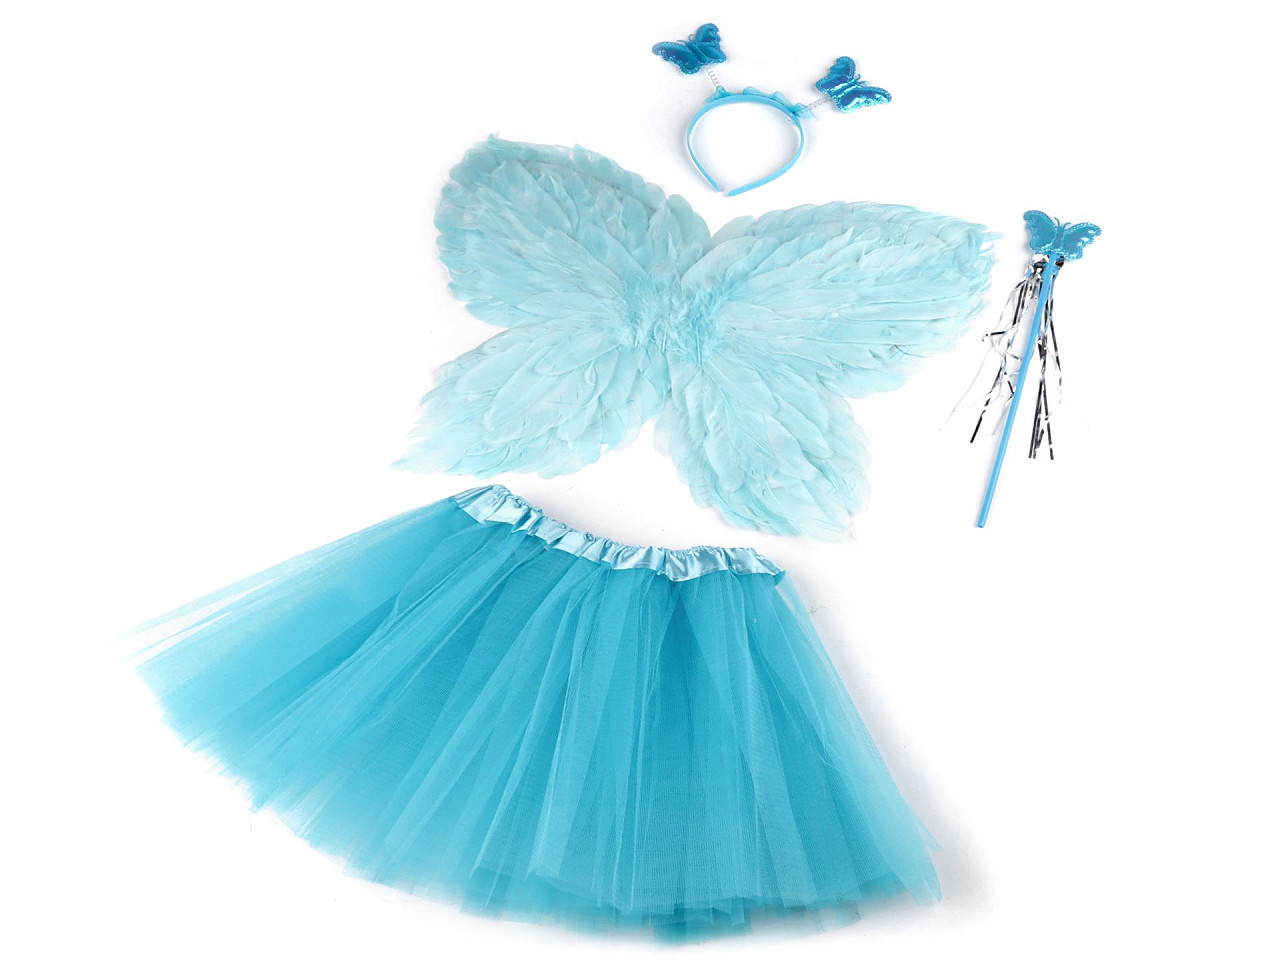 Karnevalový kostým - víla, péřová křídla, barva 3 modrá andělská